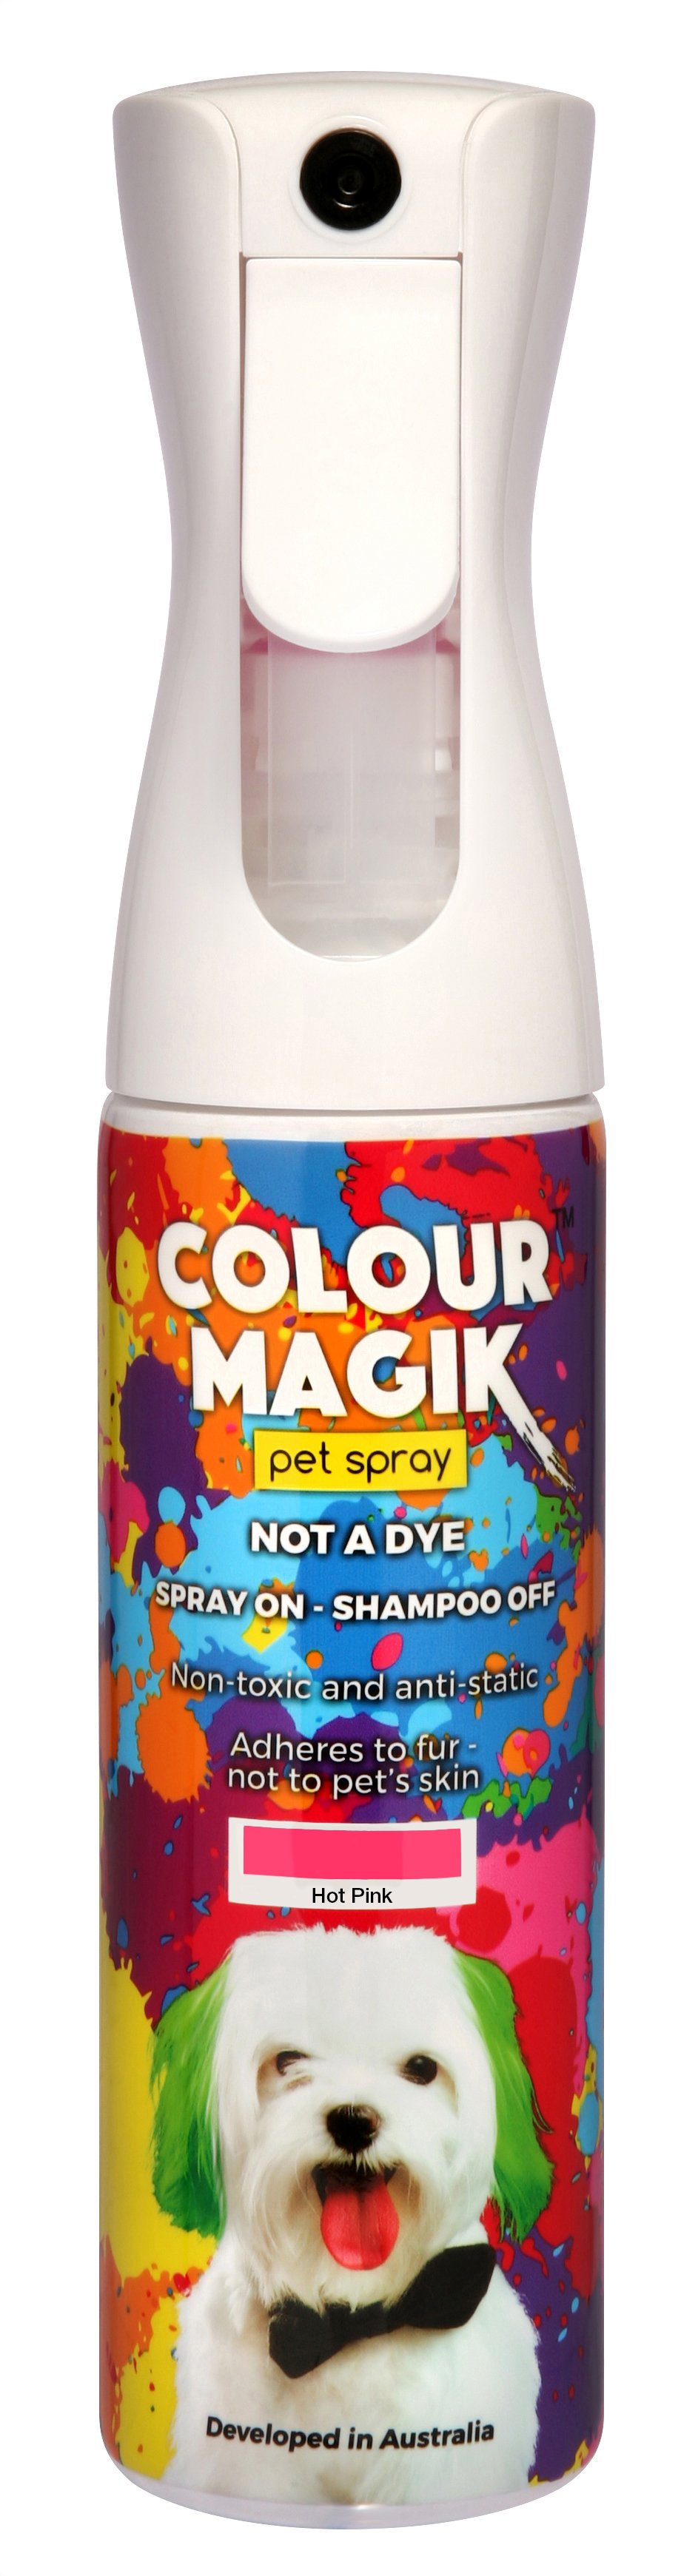 Colour Magic Pet Spray Hot Pink